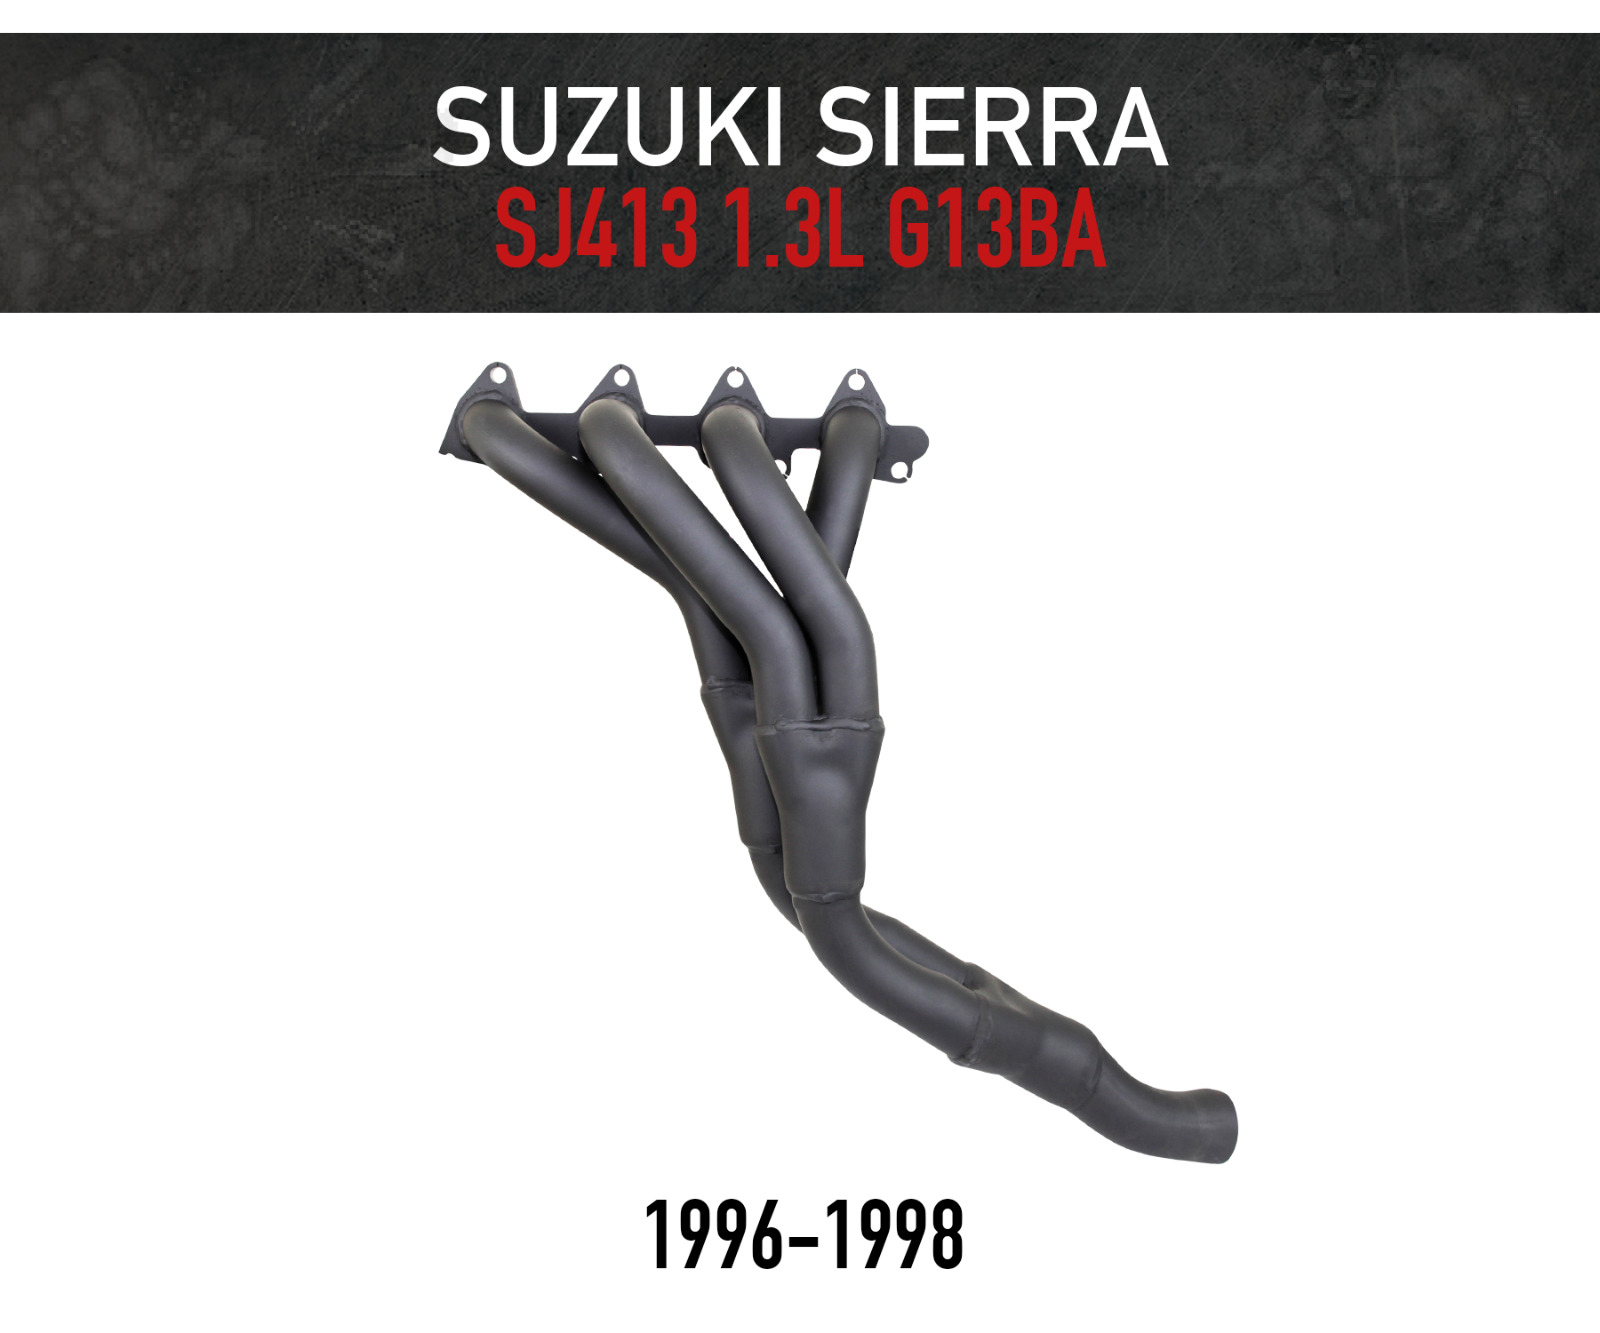 Headers / Extractors for Suzuki Sierra SJ413 (SJ80) 1.3L 4WD (1996-1988)